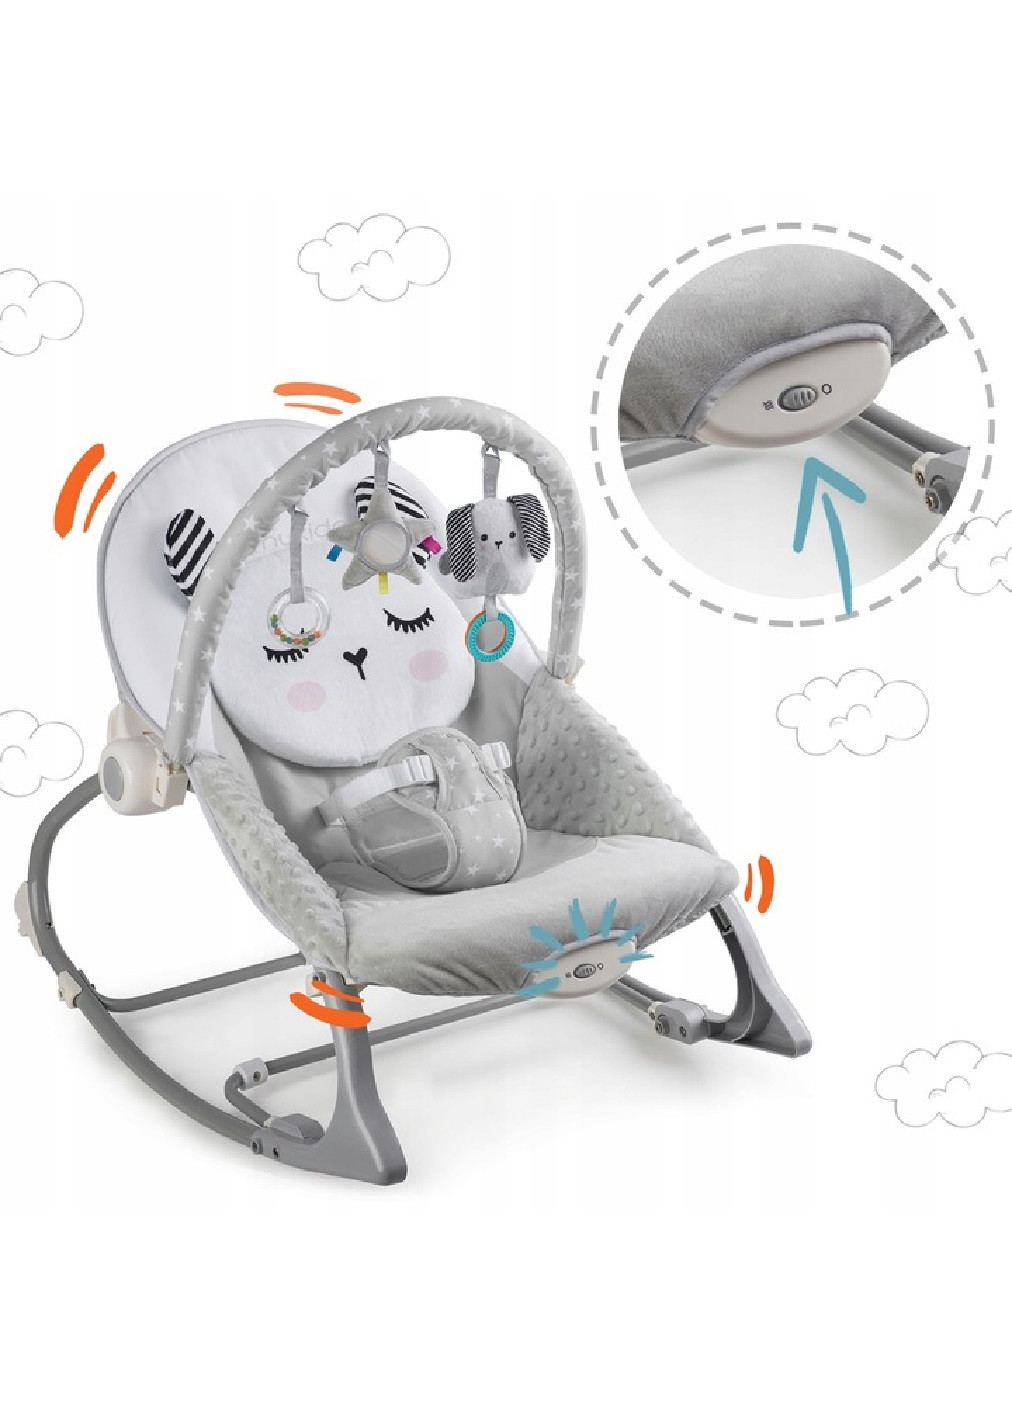 Дитяче крісло гойдалка шезлонг багатофункціональне для дітей малюків з вібрацією 62х48 см (475159-Prob) Unbranded (262596930)